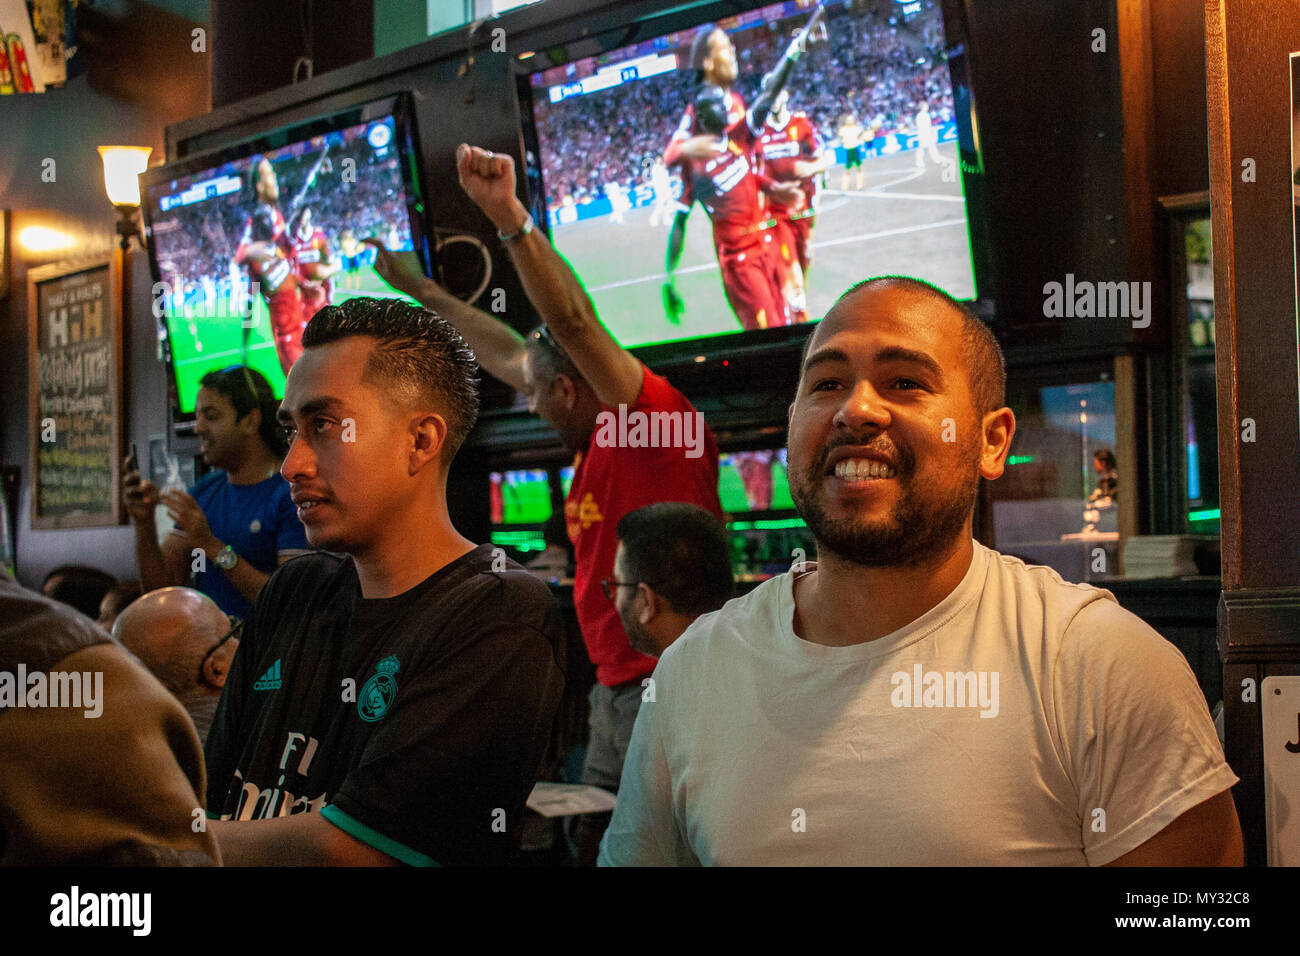 Liverpool & Real Madrid tifosi guardare la finale di Champions League a Dublino's Bar, Centro di Los Angeles. Foto Stock